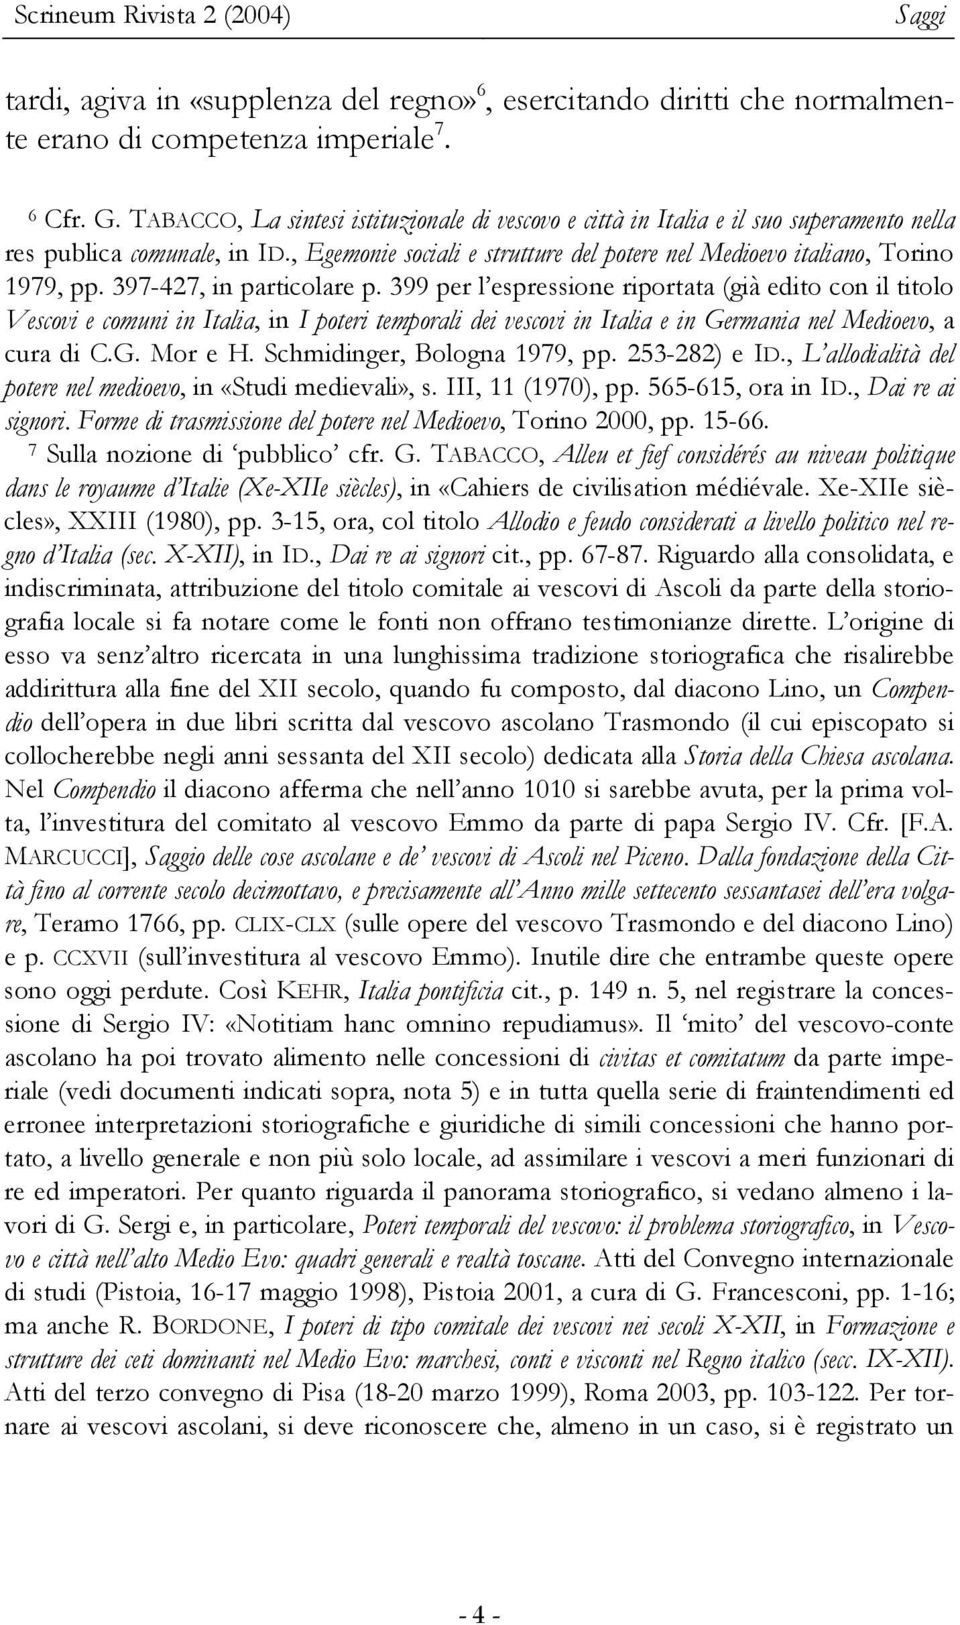 397-427, in particolare p. 399 per l espressione riportata (già edito con il titolo Vescovi e comuni in Italia, in I poteri temporali dei vescovi in Italia e in Germania nel Medioevo, a cura di C.G. Mor e H.